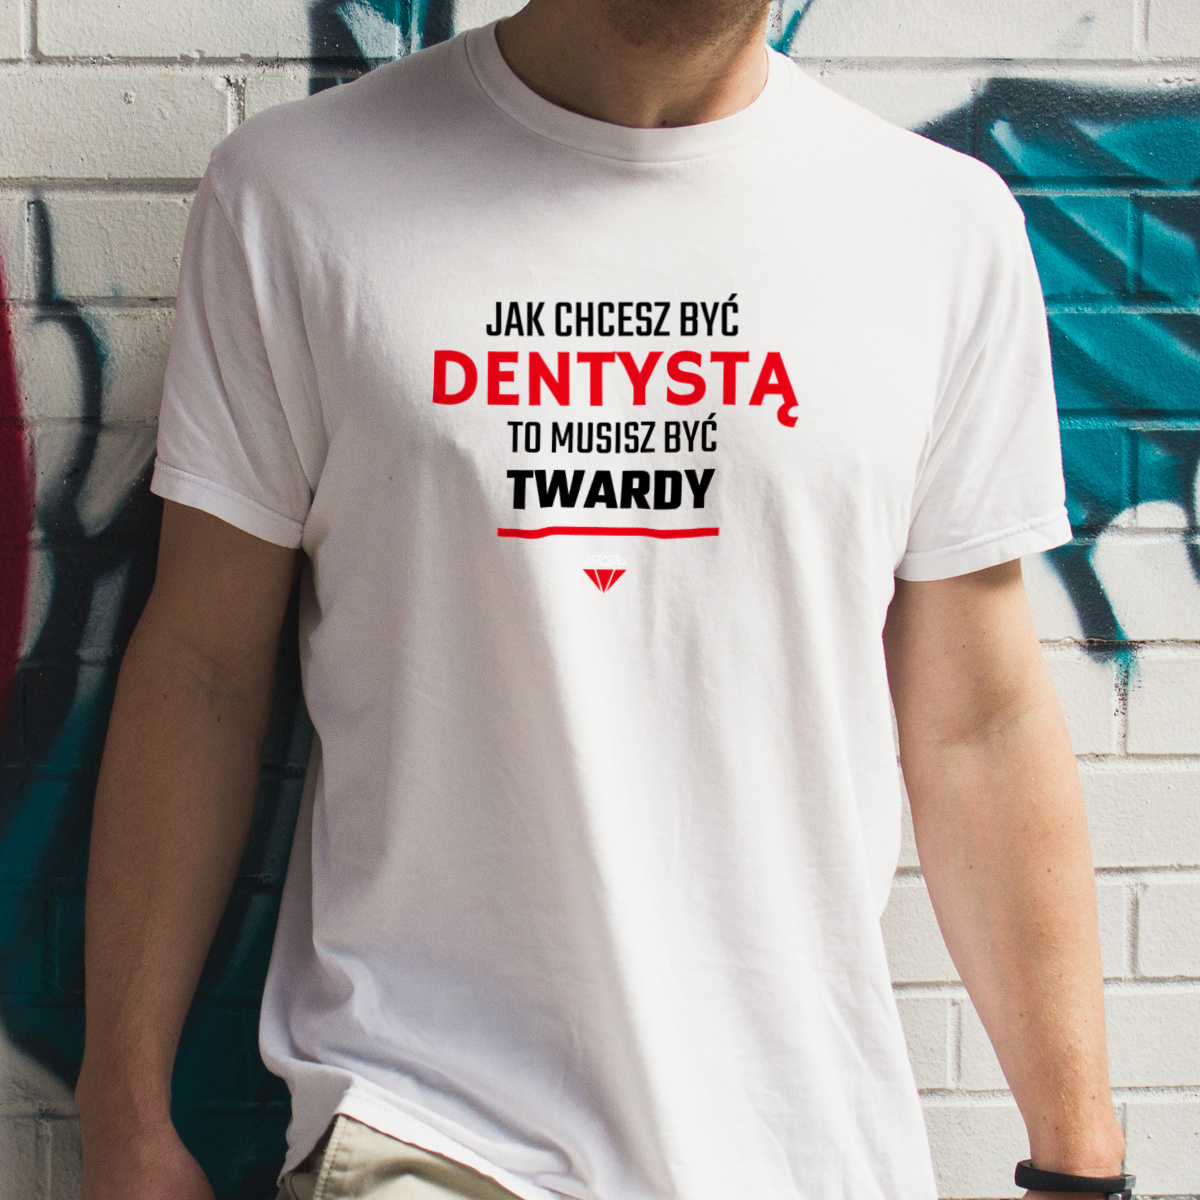 Jak chcesz być dentystą to musisz być twardy - Męska Koszulka Biała